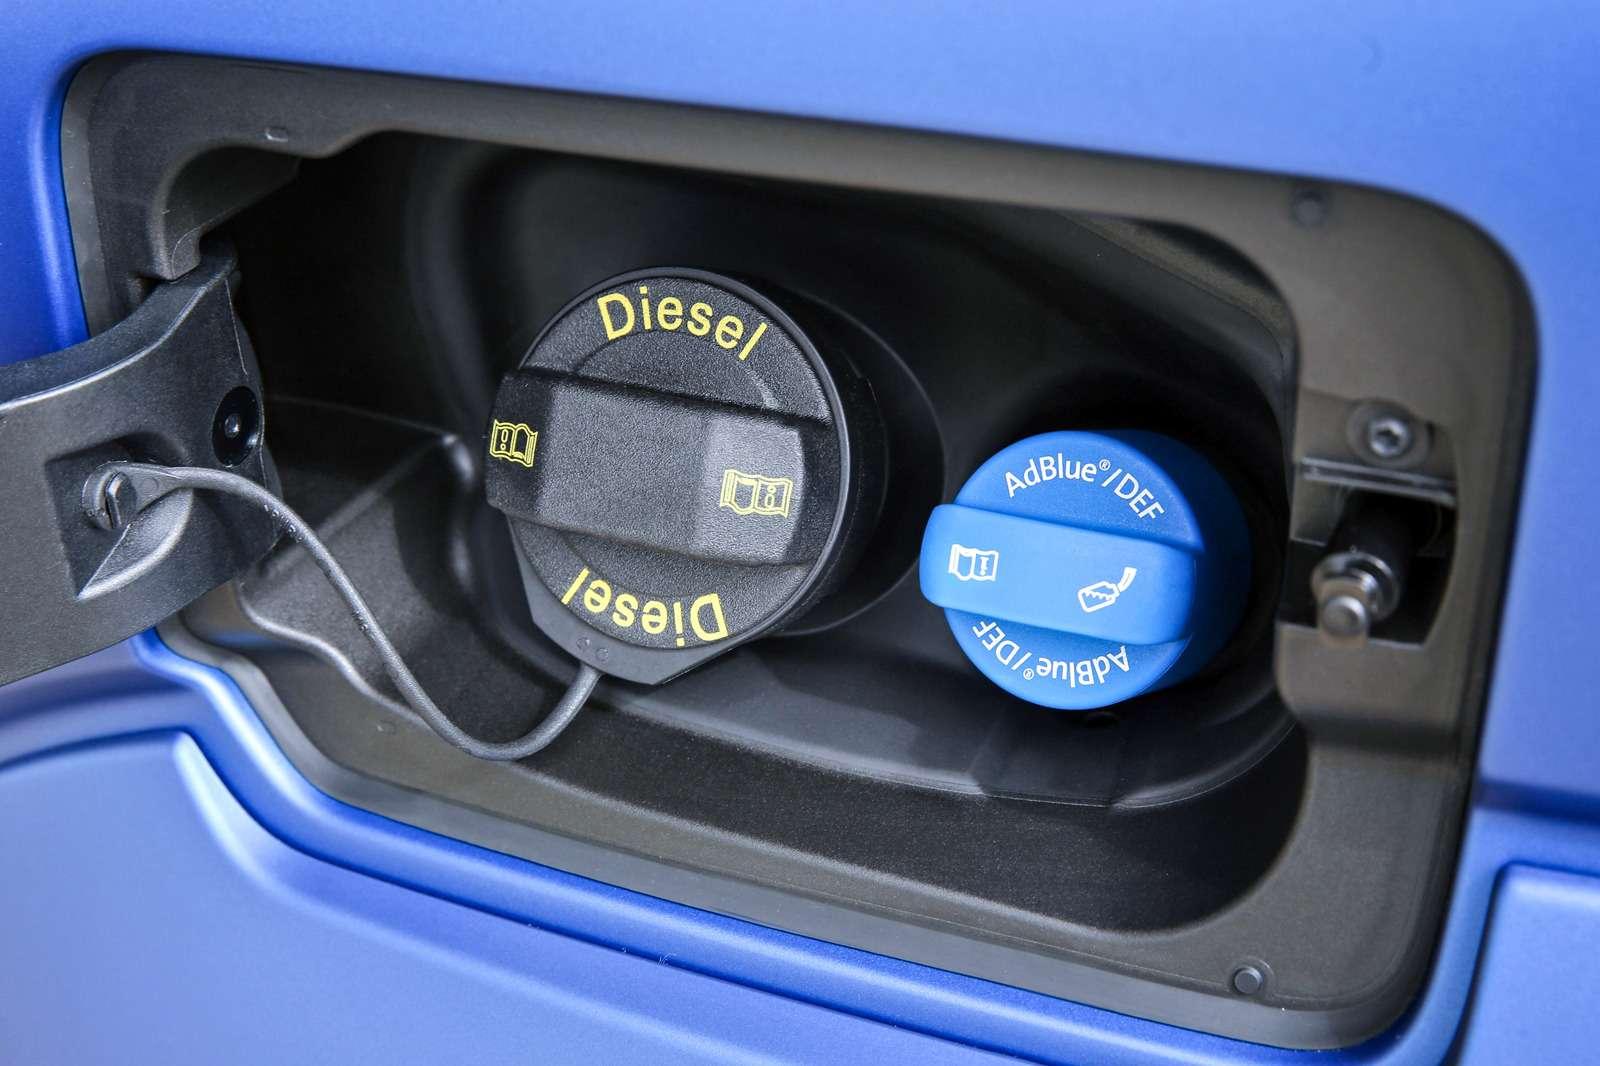 Обновленный Volkswagen Amarok. Горловина для залива раствора AdBlue расположена рядом с топливозаправочной.